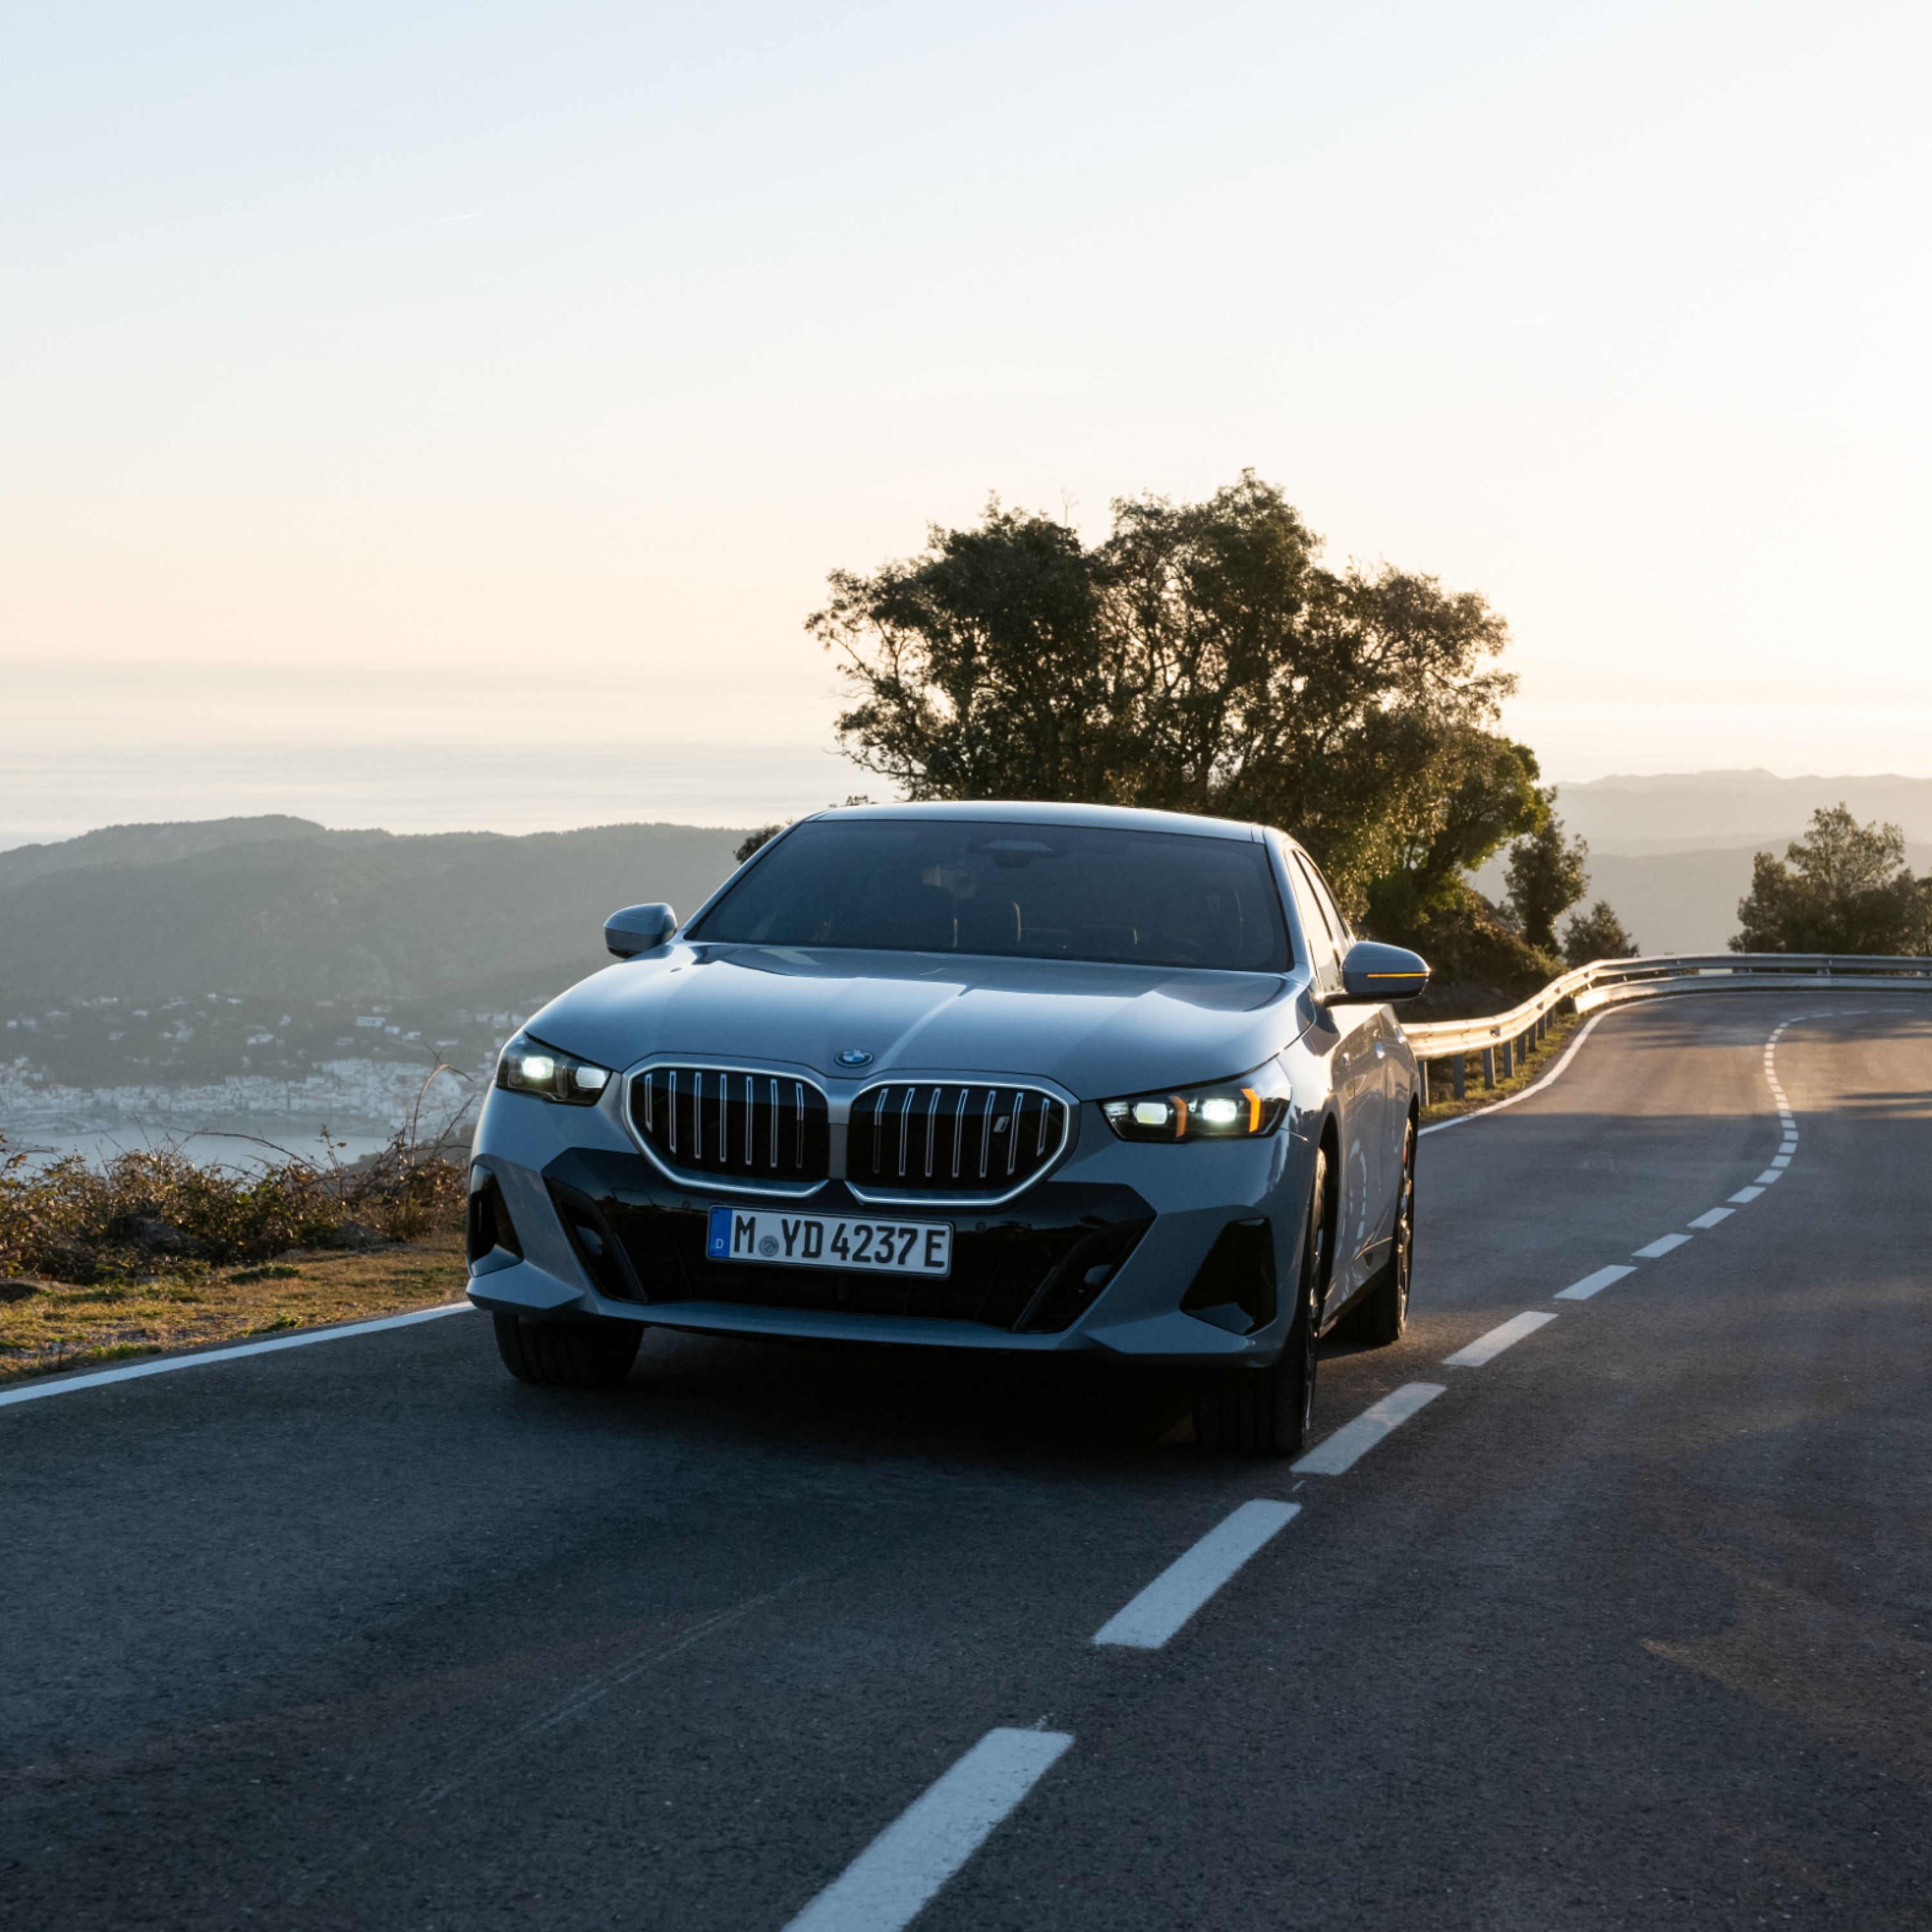 BMW i5 Sedan Frozen Pure sive metalik boje na putu pored obale Mediterana